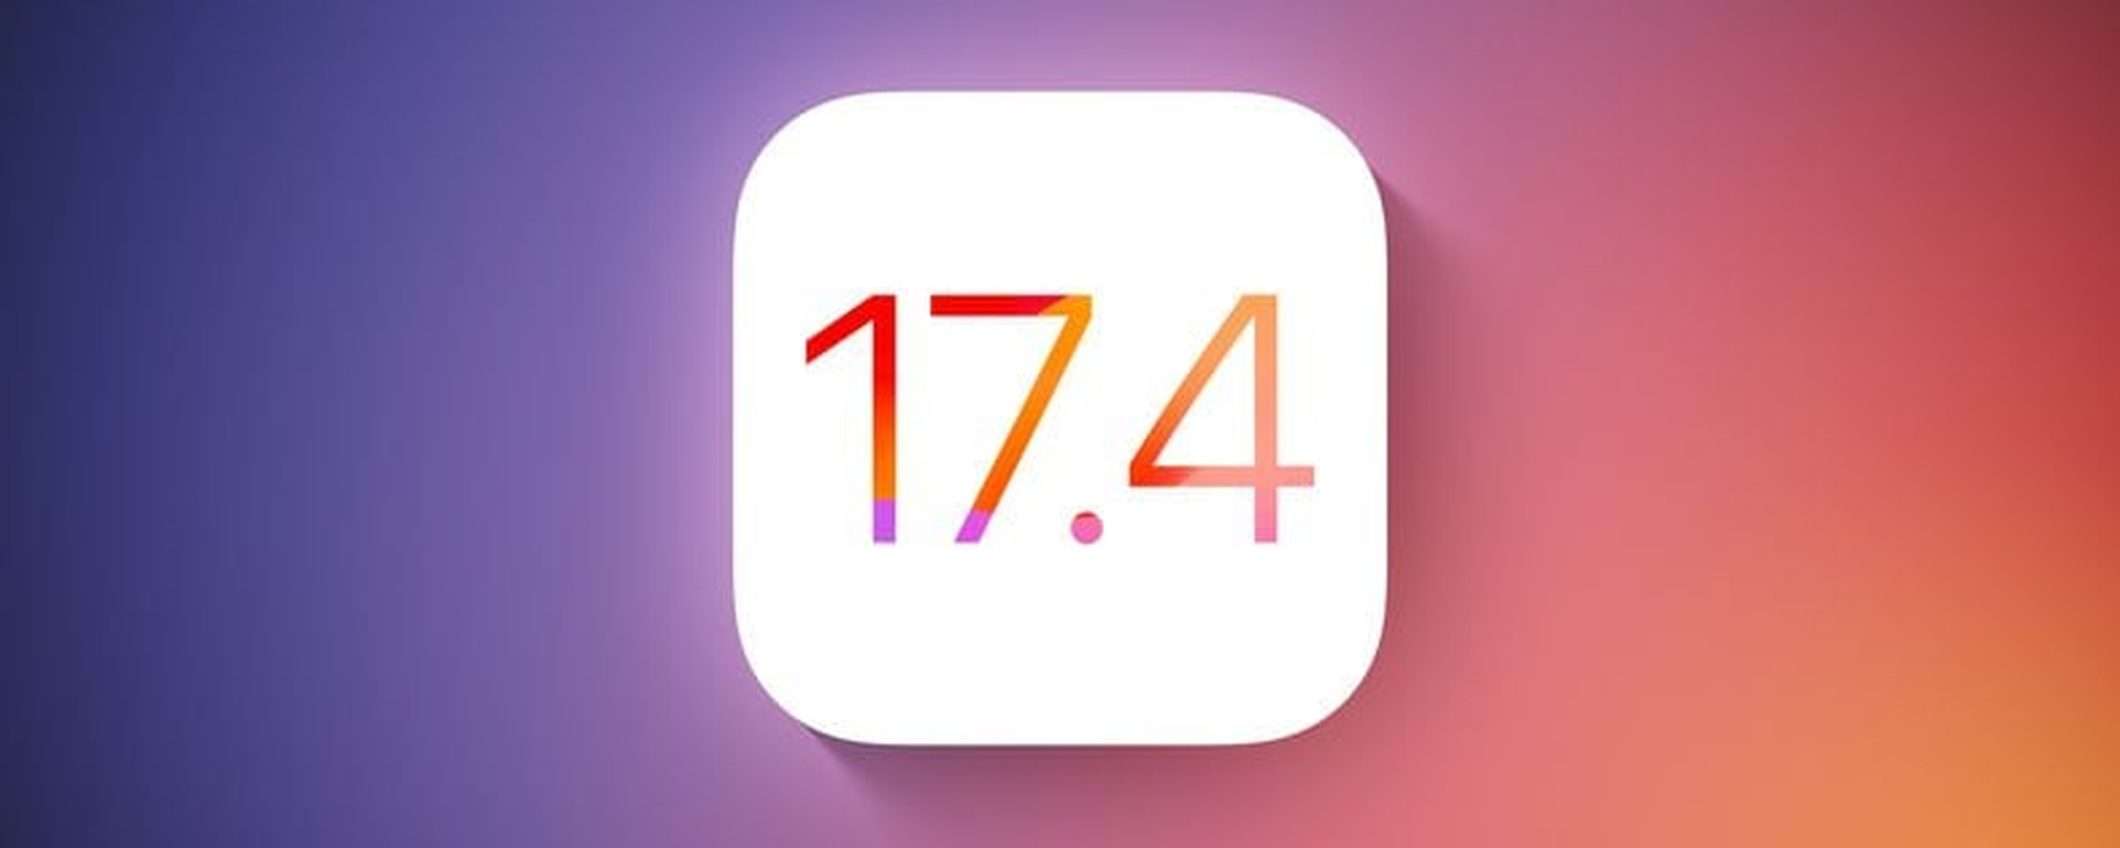 Apple declassa le PWA con la beta 2 di iOS 17.4 (update)